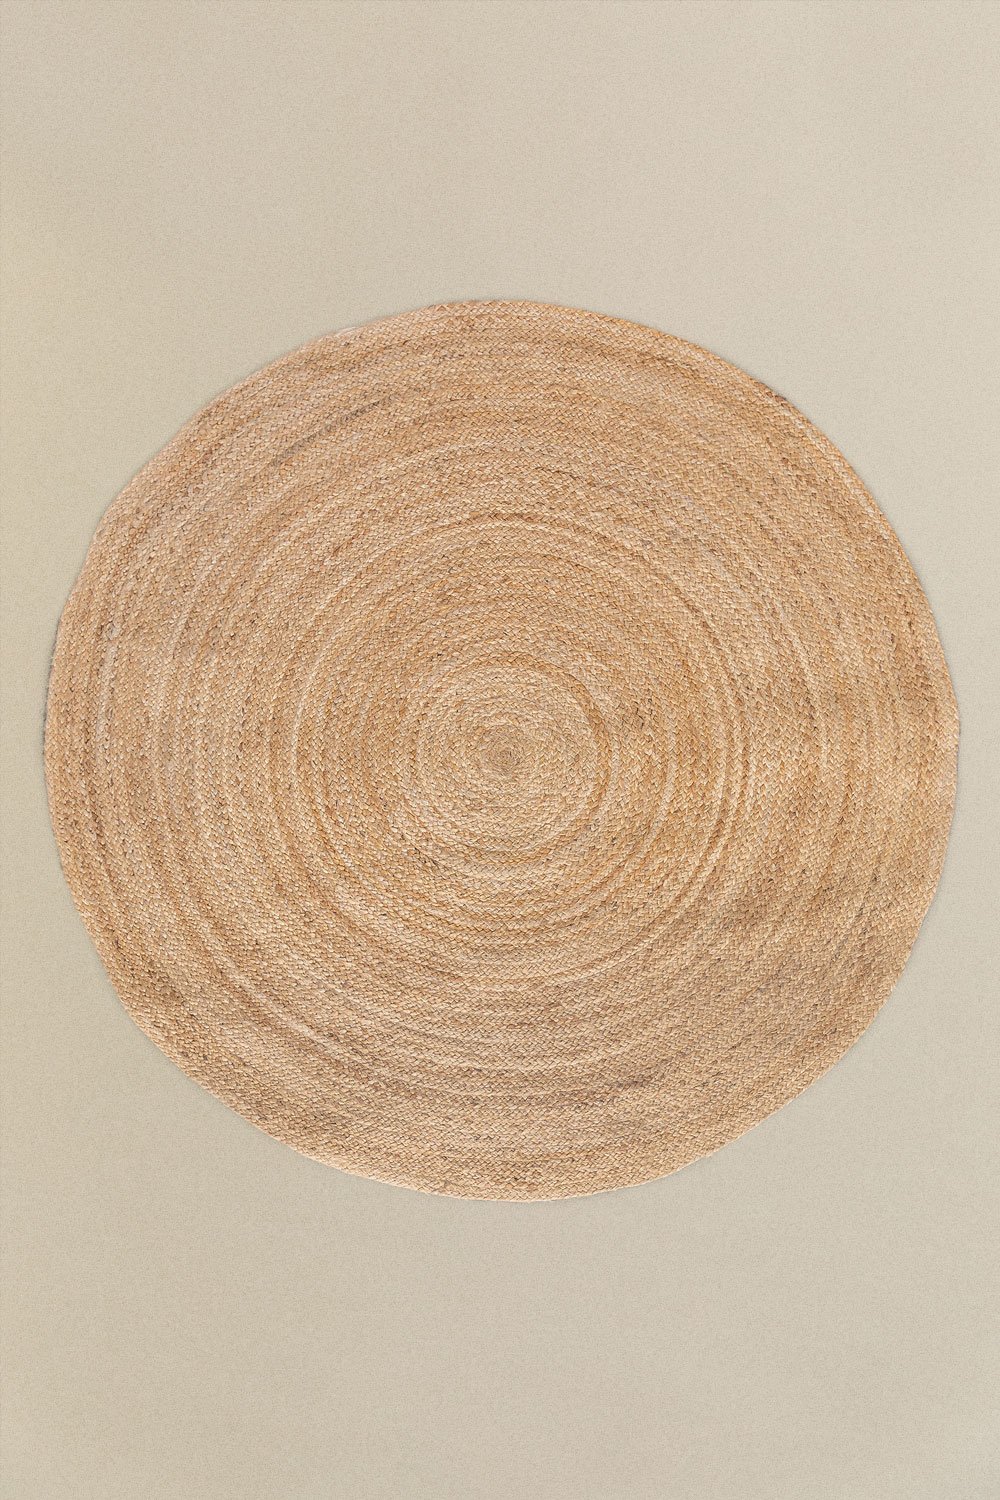 Alfombra in iuta Rotonda (Ø145 cm) Neferet, immagine della galleria 1